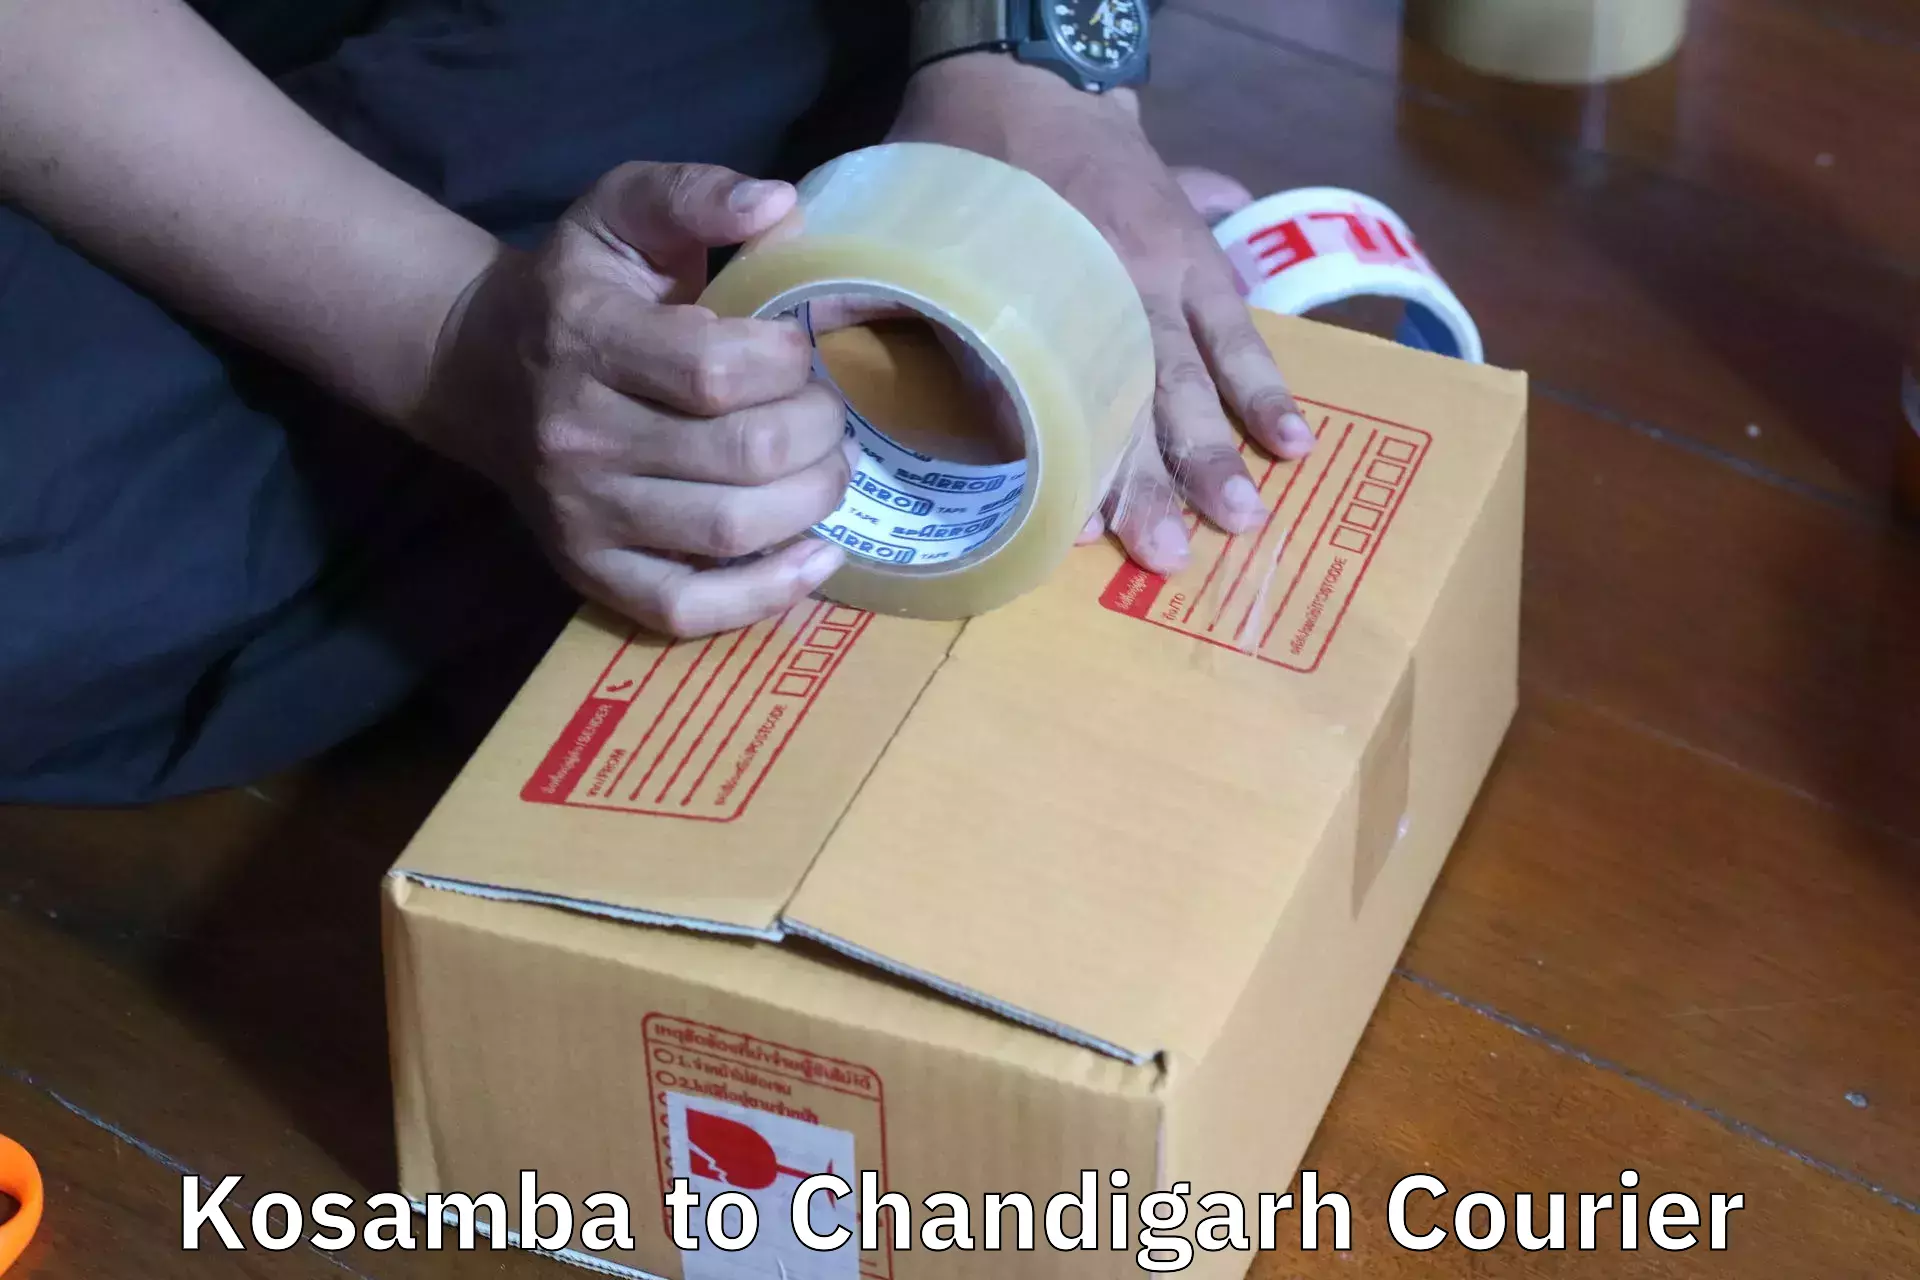 Professional packing and transport Kosamba to Chandigarh